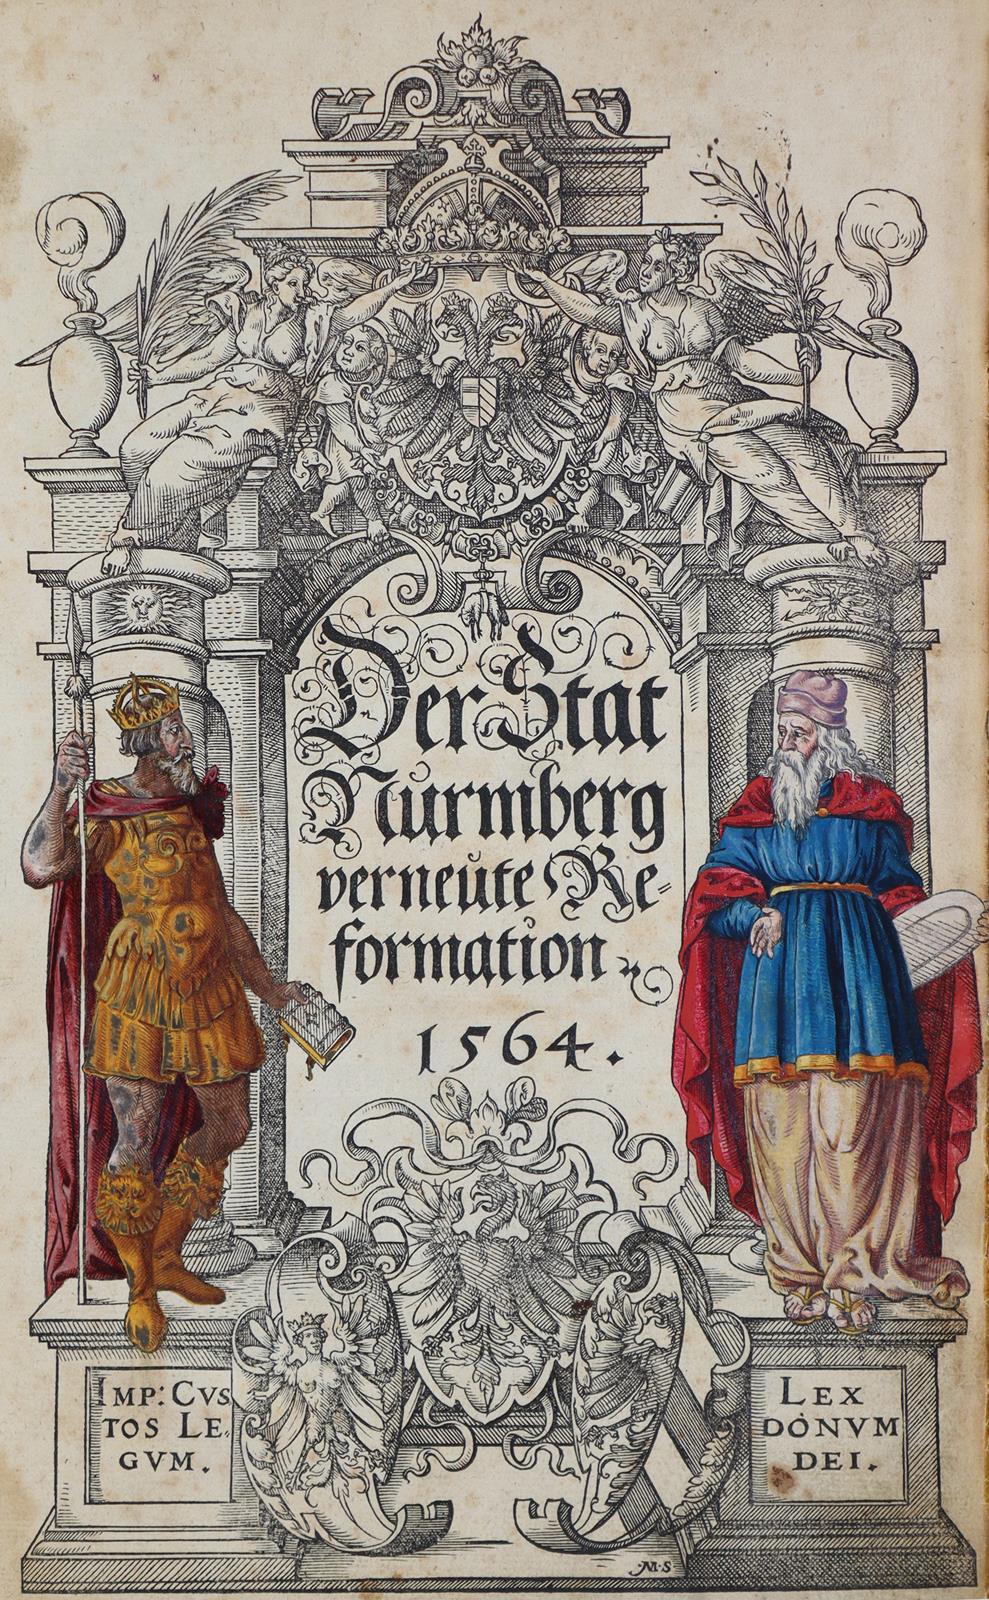 Stat Nurmberg verneute Reformation, Der. | Bild Nr.1